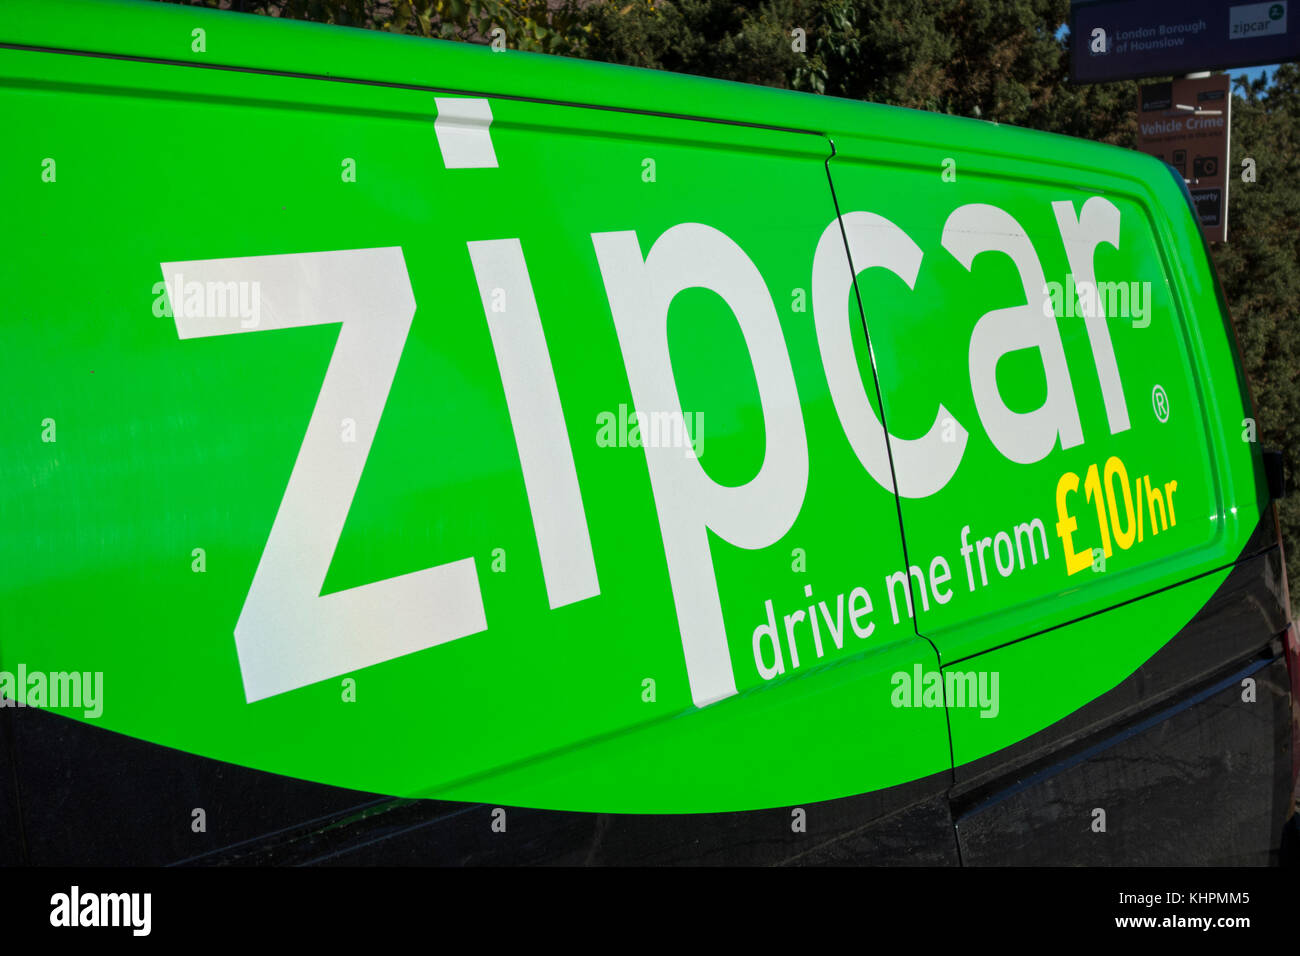 Zipvan and Zipcar self-drive van rental in London, UK Stock Photo - Alamy